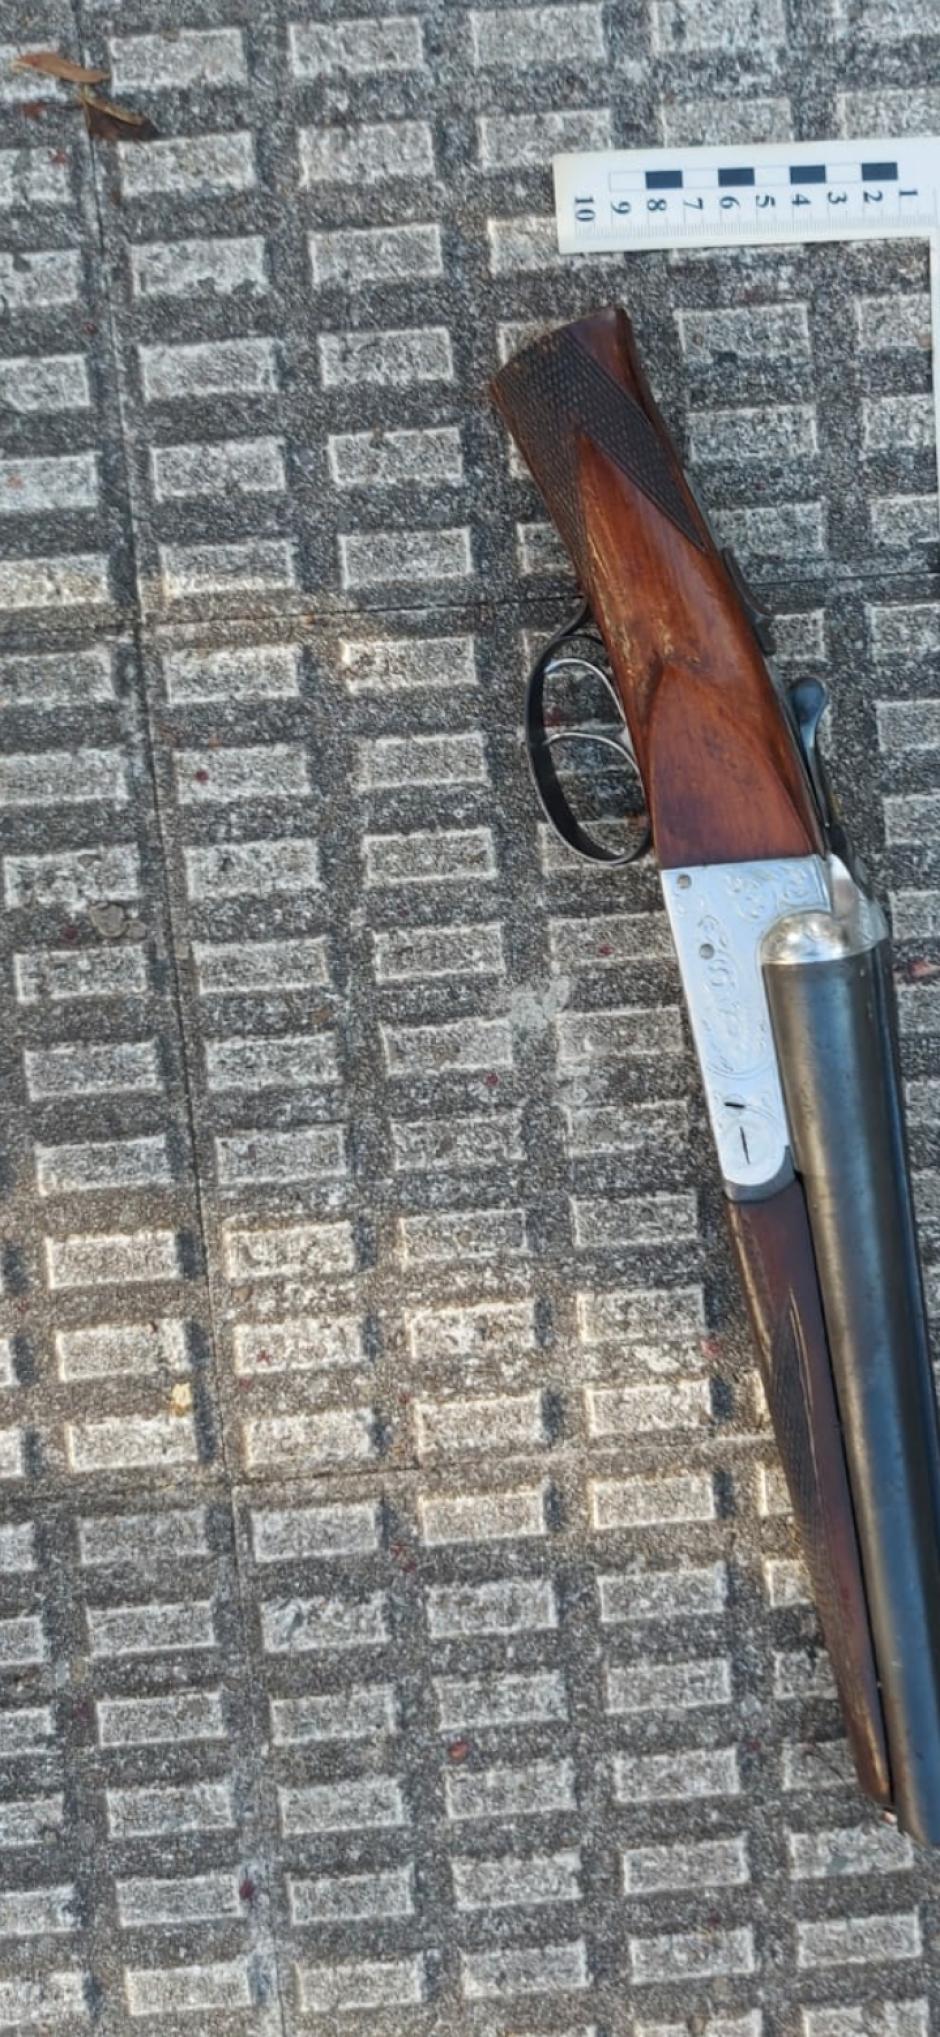 Imagen de la escopeta utilizada en el crimen de Orio